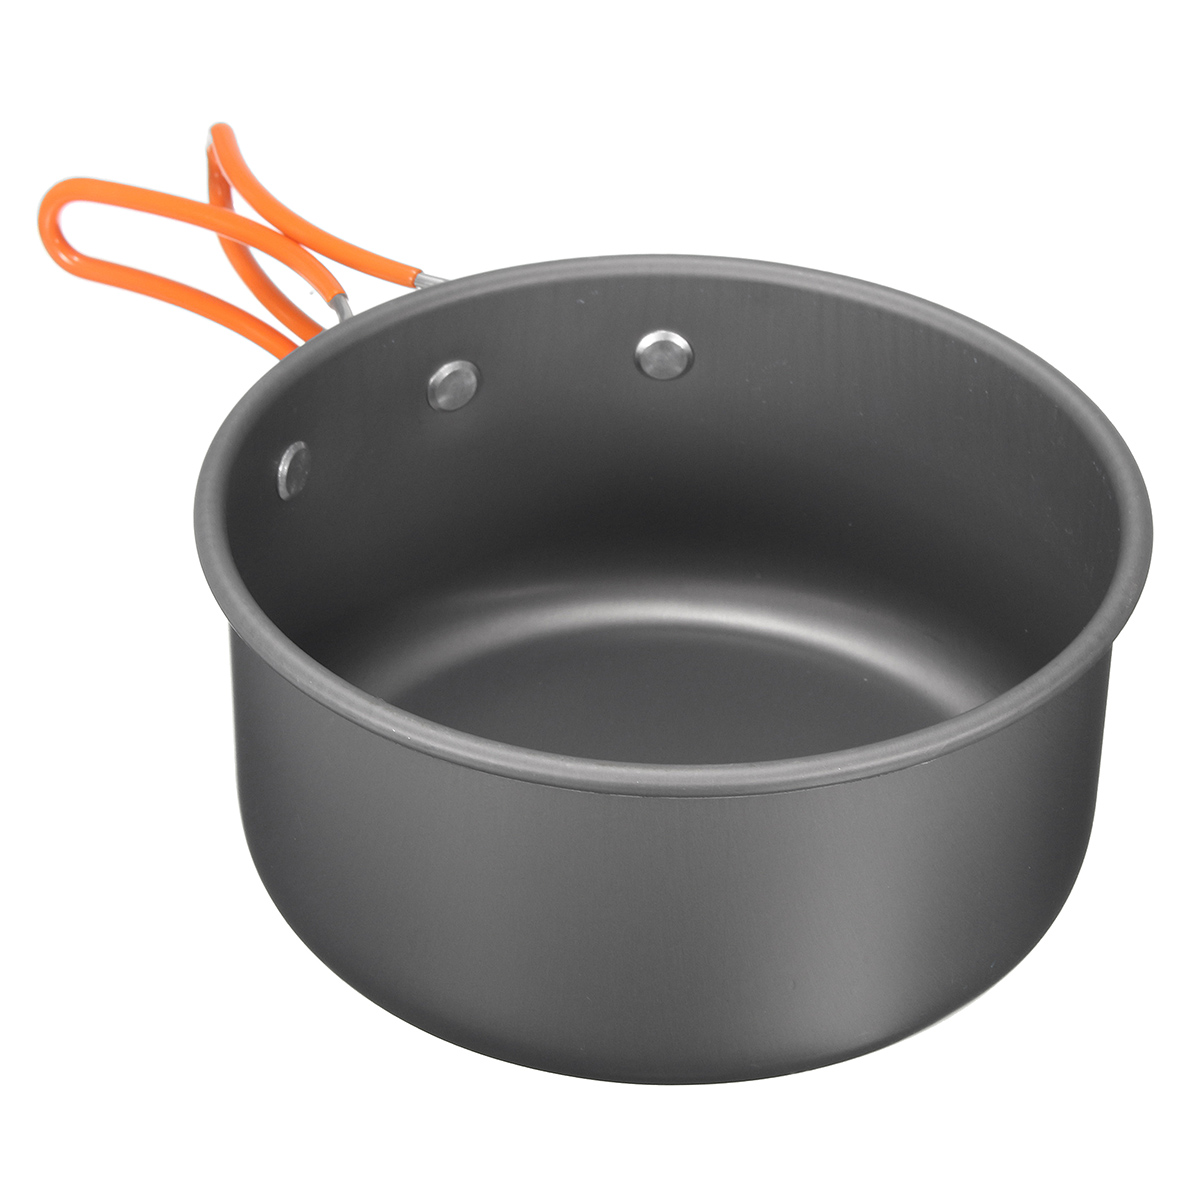 8Pcs-Camping-Aluminum-Pot-Bowl-Portable-Outdoor-Picnic-Cooking-Pan-Set-Cookware-1116210-5